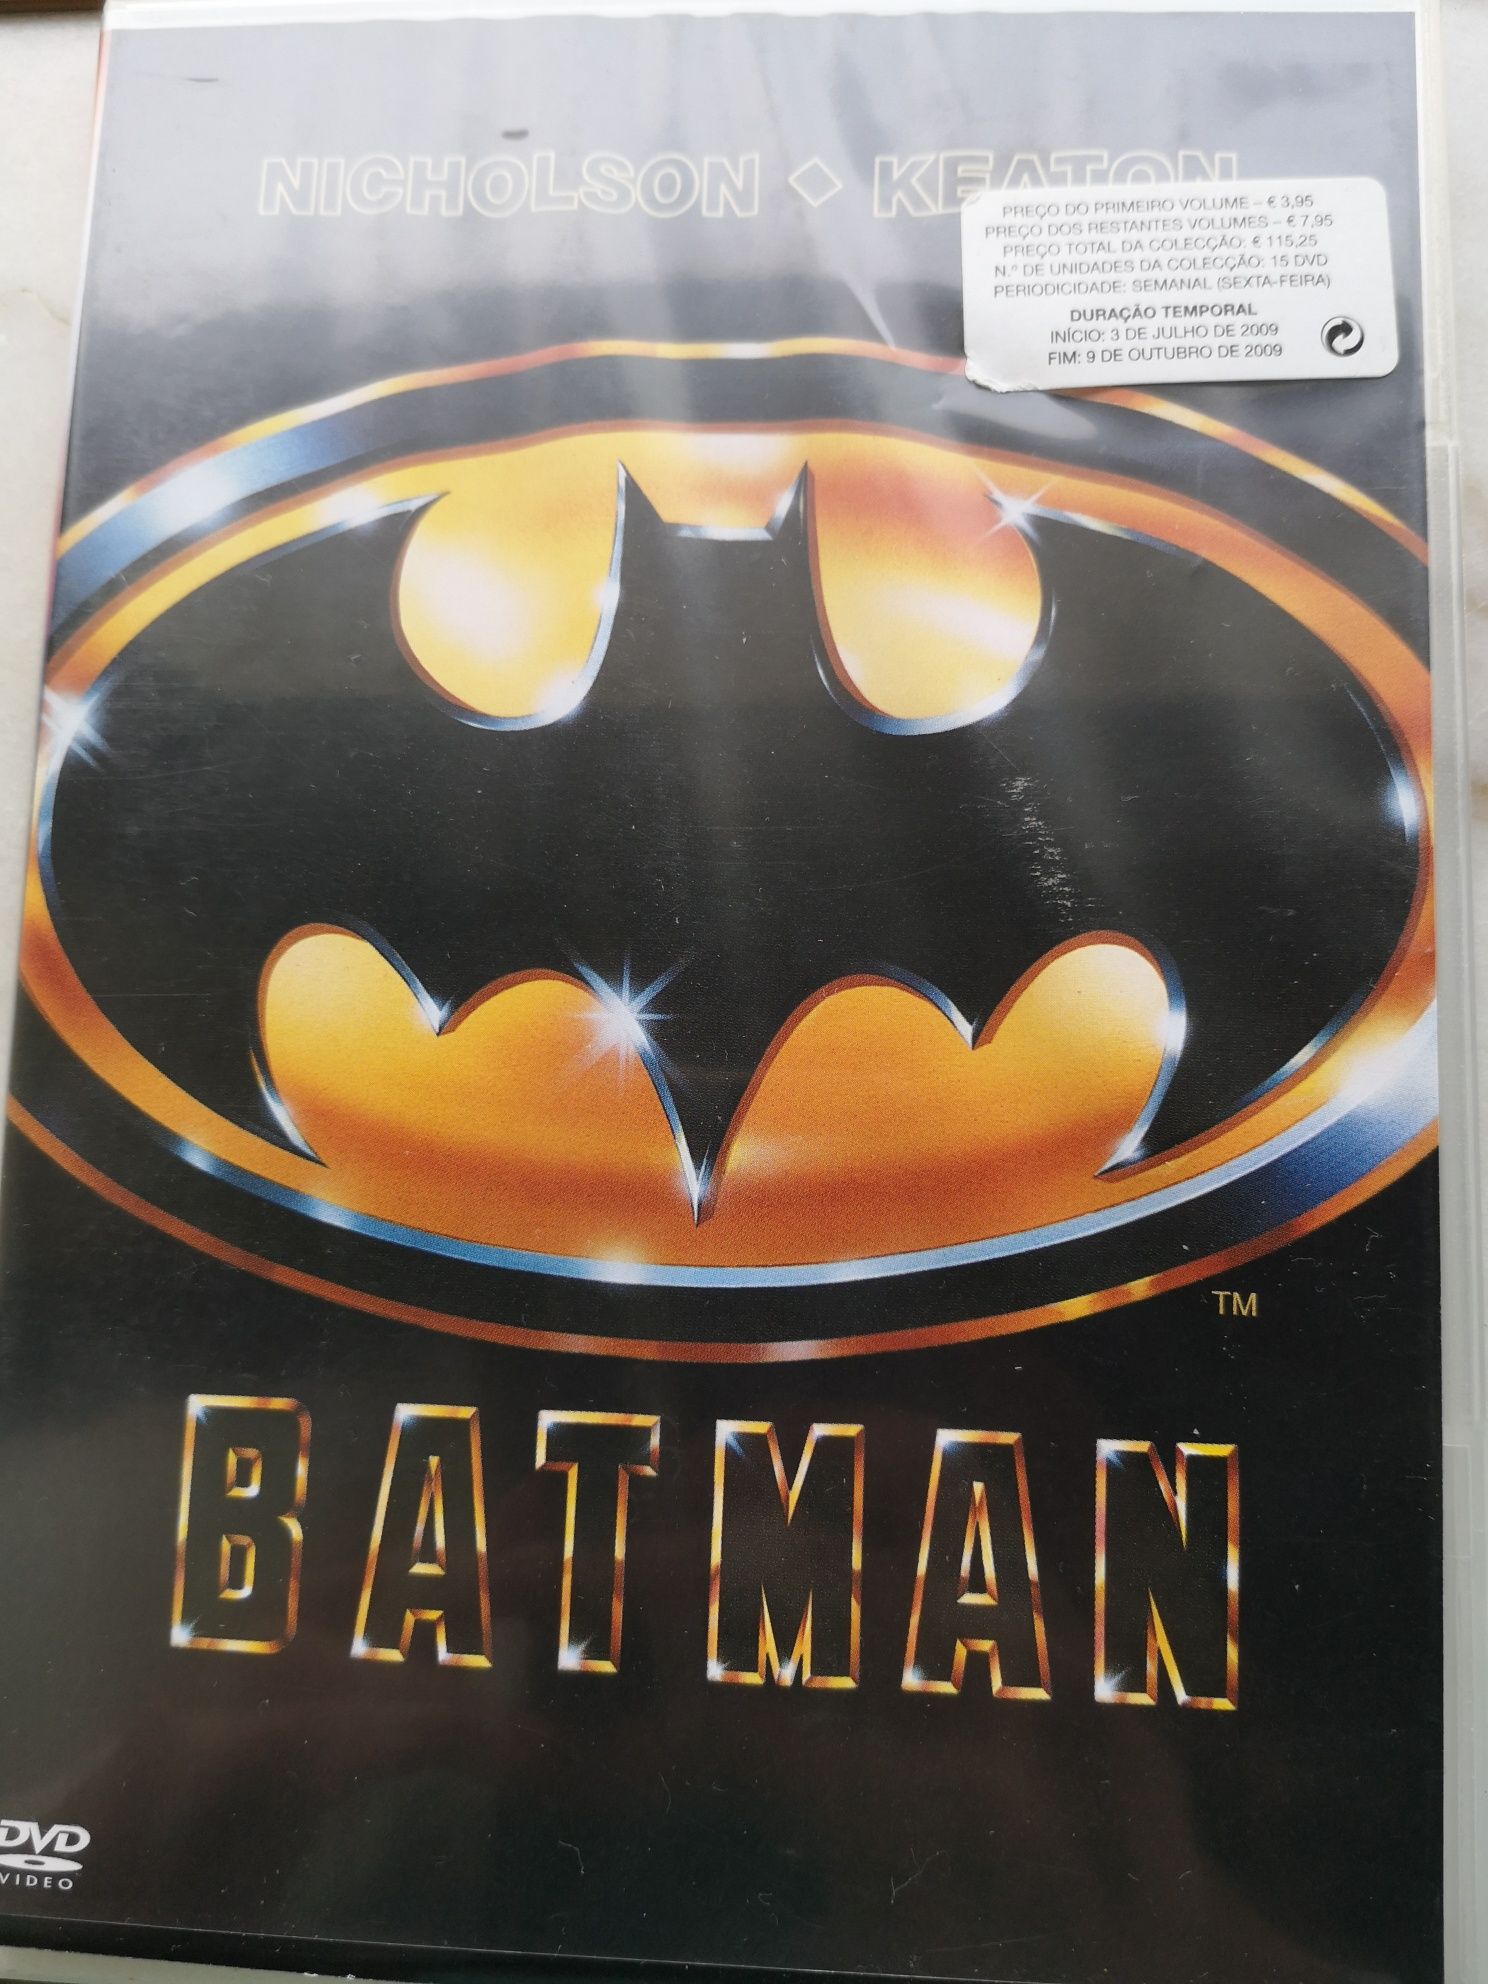 DVD "Batman" - Portes de envio incluídos